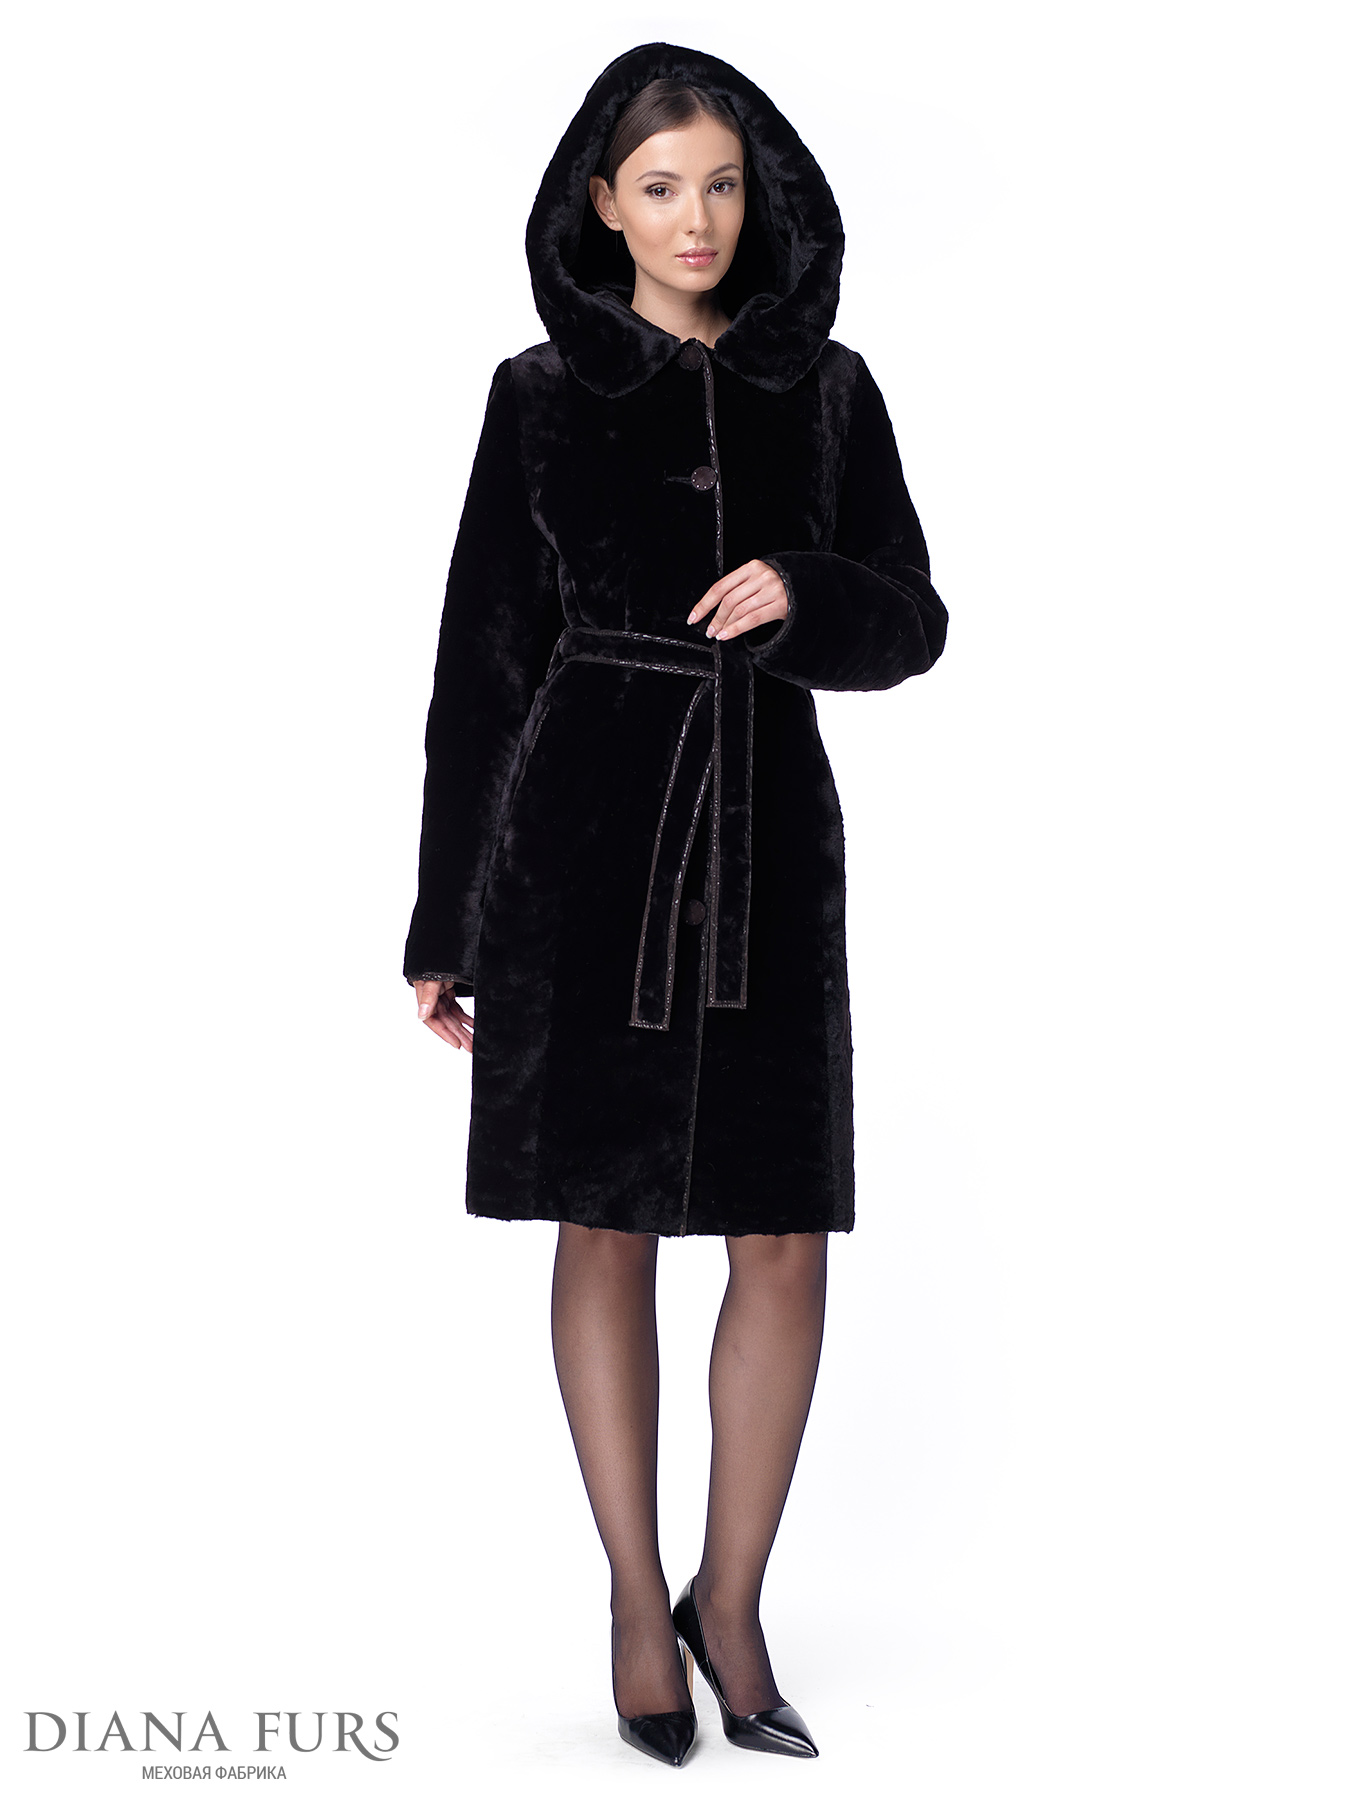 Французское пальто из мутона с капшоном, под пояс, модель 203-100